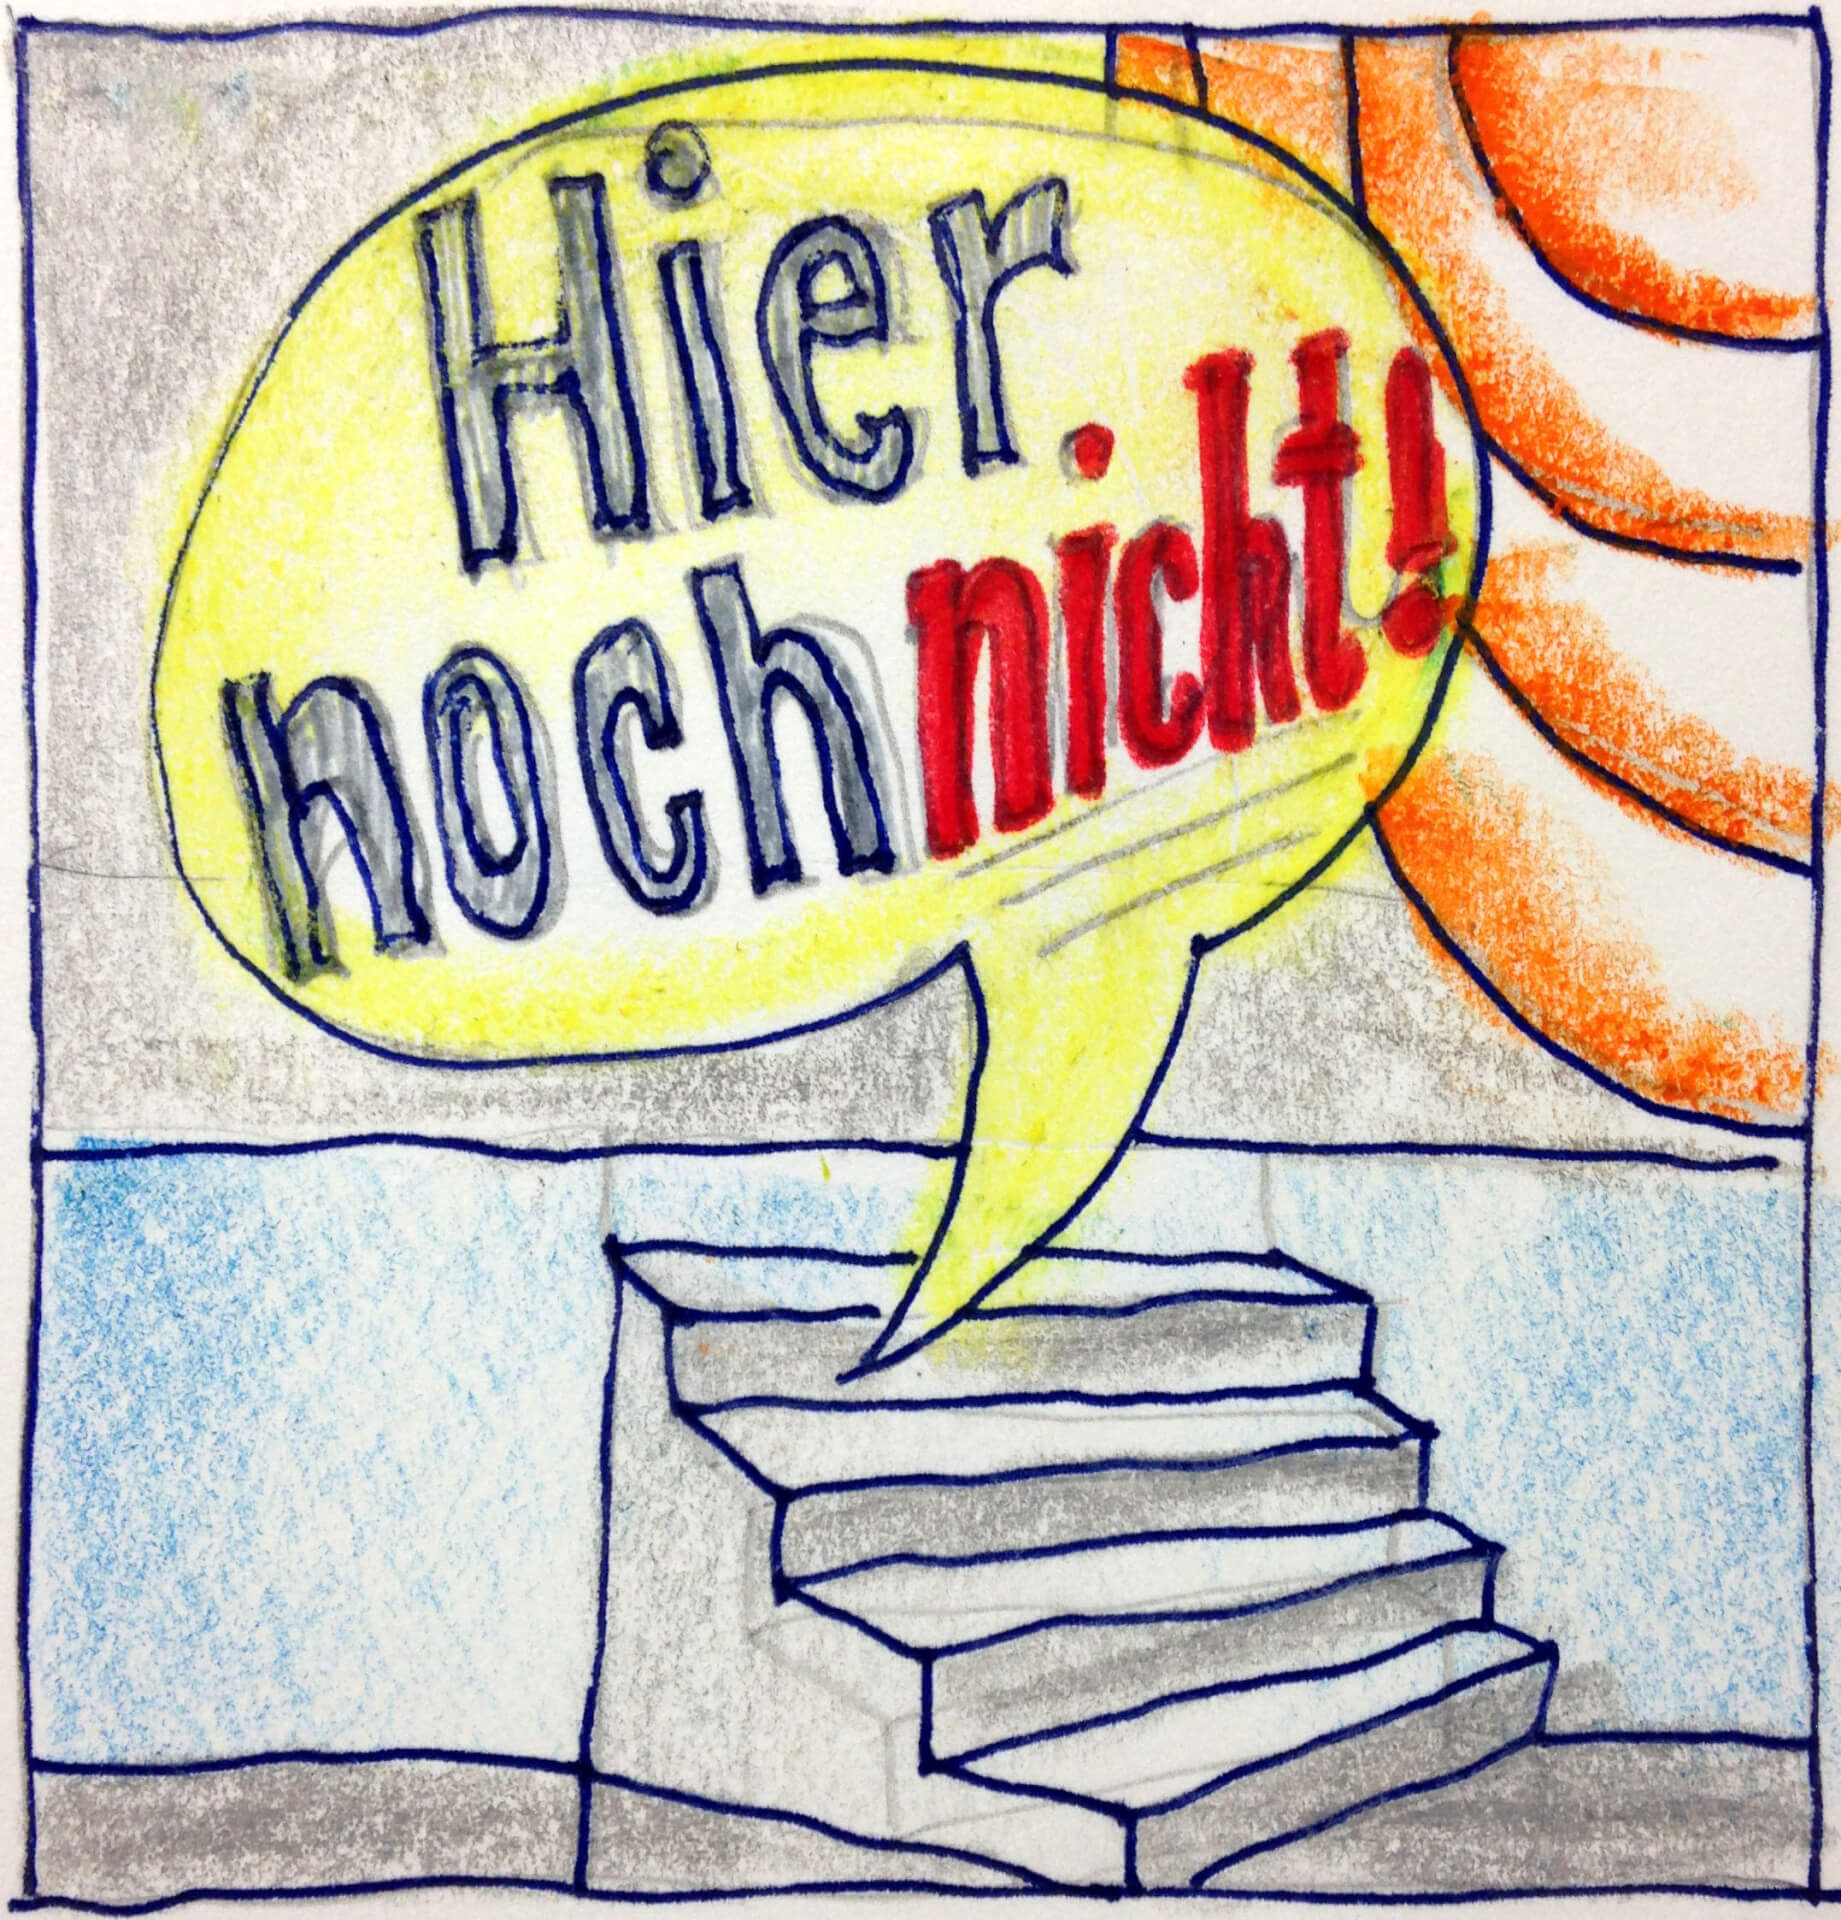 Handgezeichnete Illustration mit einer Sprechblase mit dem deutschen Satz „Hier noch nicht!“ und einem Stimmsymbol über einem Stapel Papiere oder Bücher.